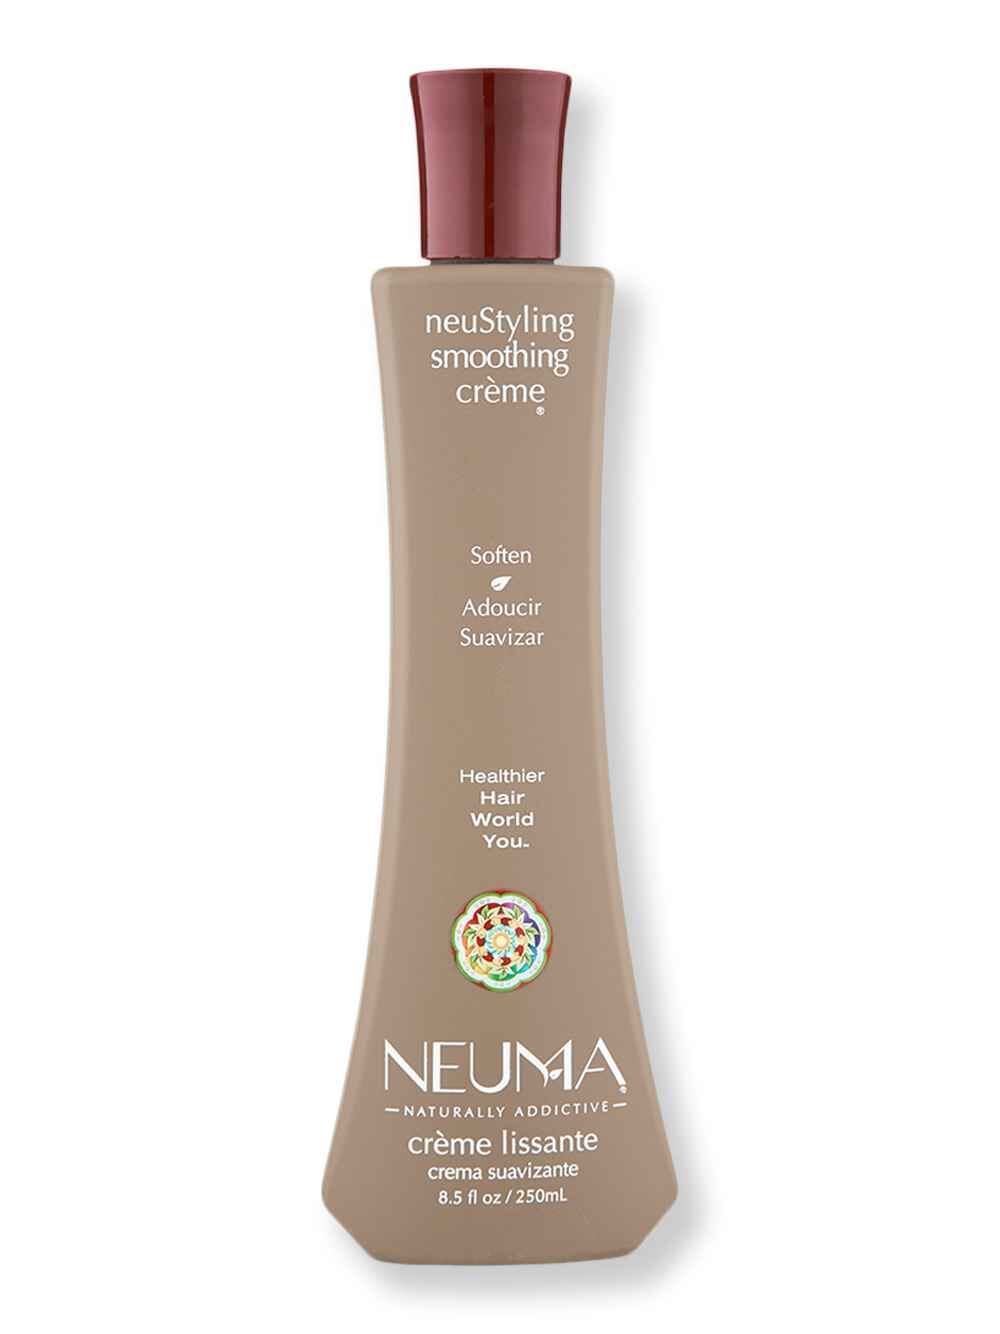 Neuma Neuma neuStyling Smoothing Creme 8.5 oz250 ml Styling Treatments 